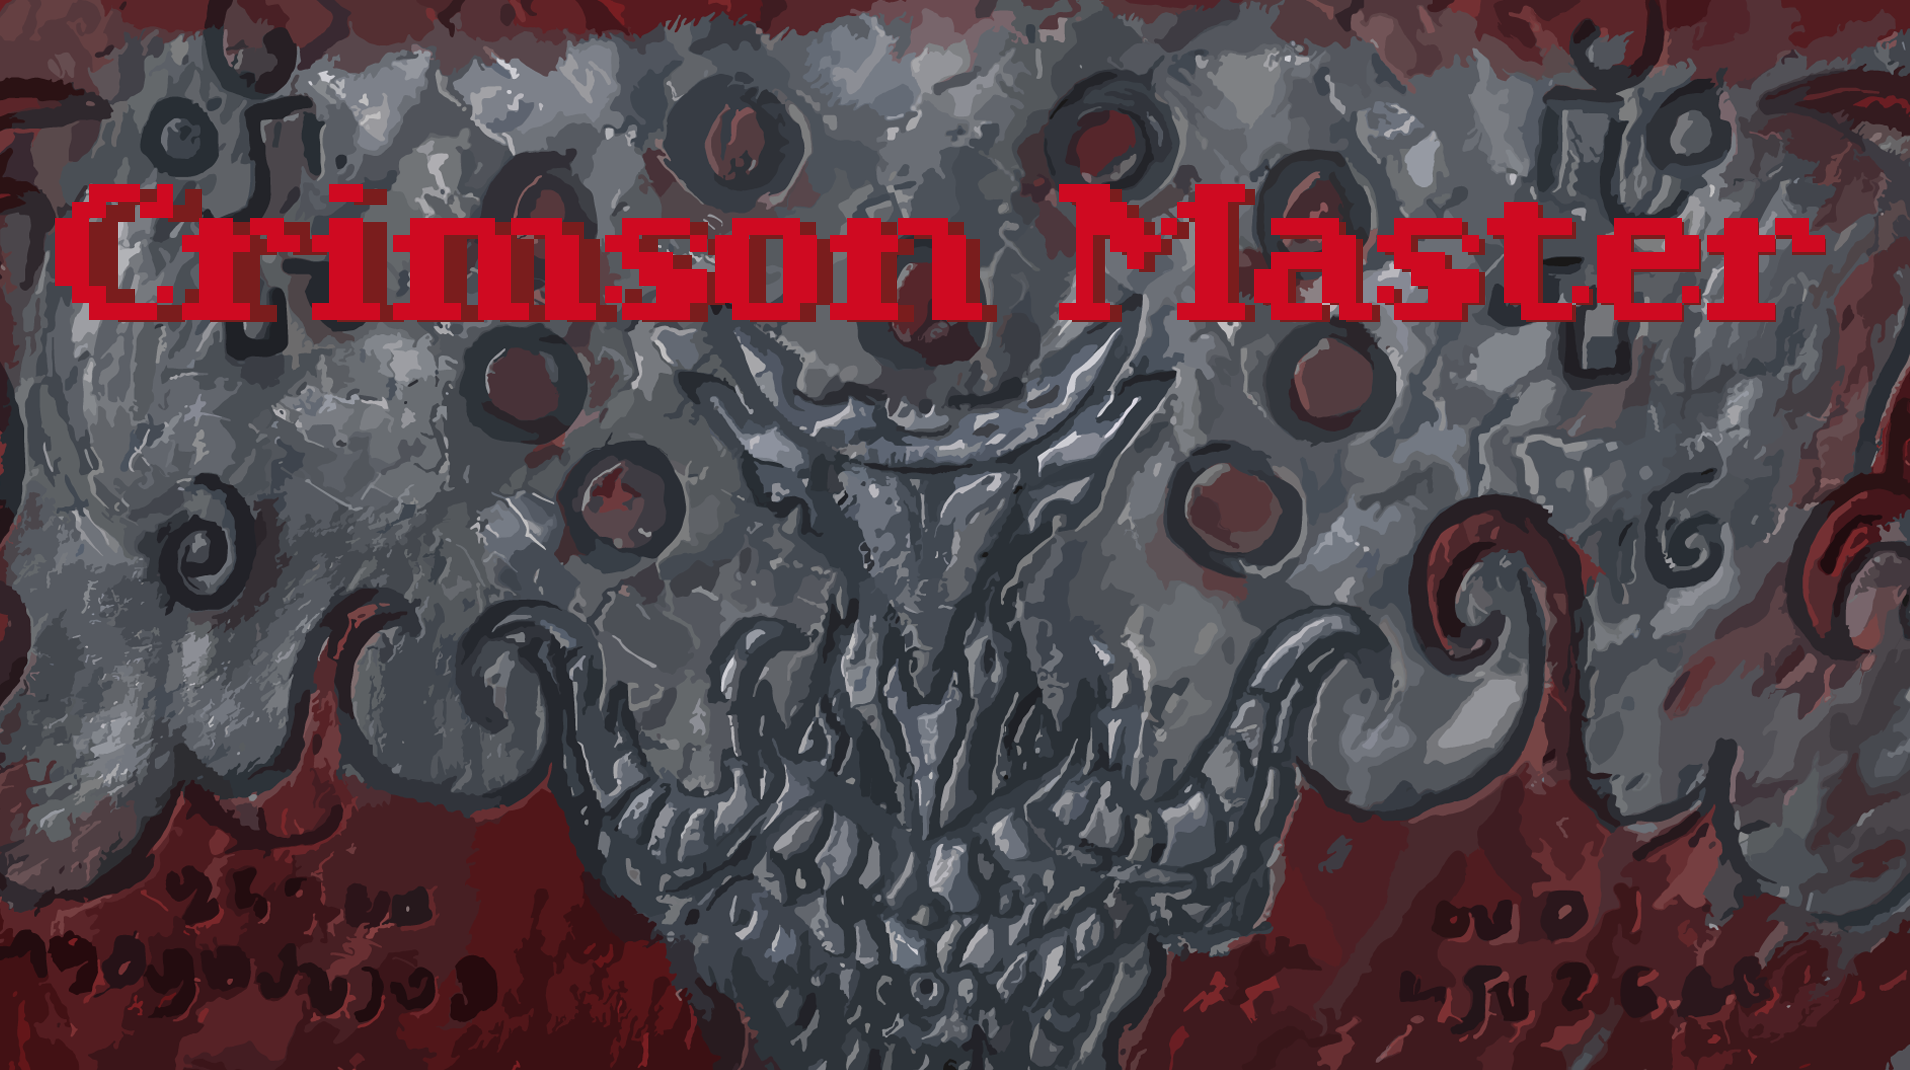 Crimson Master